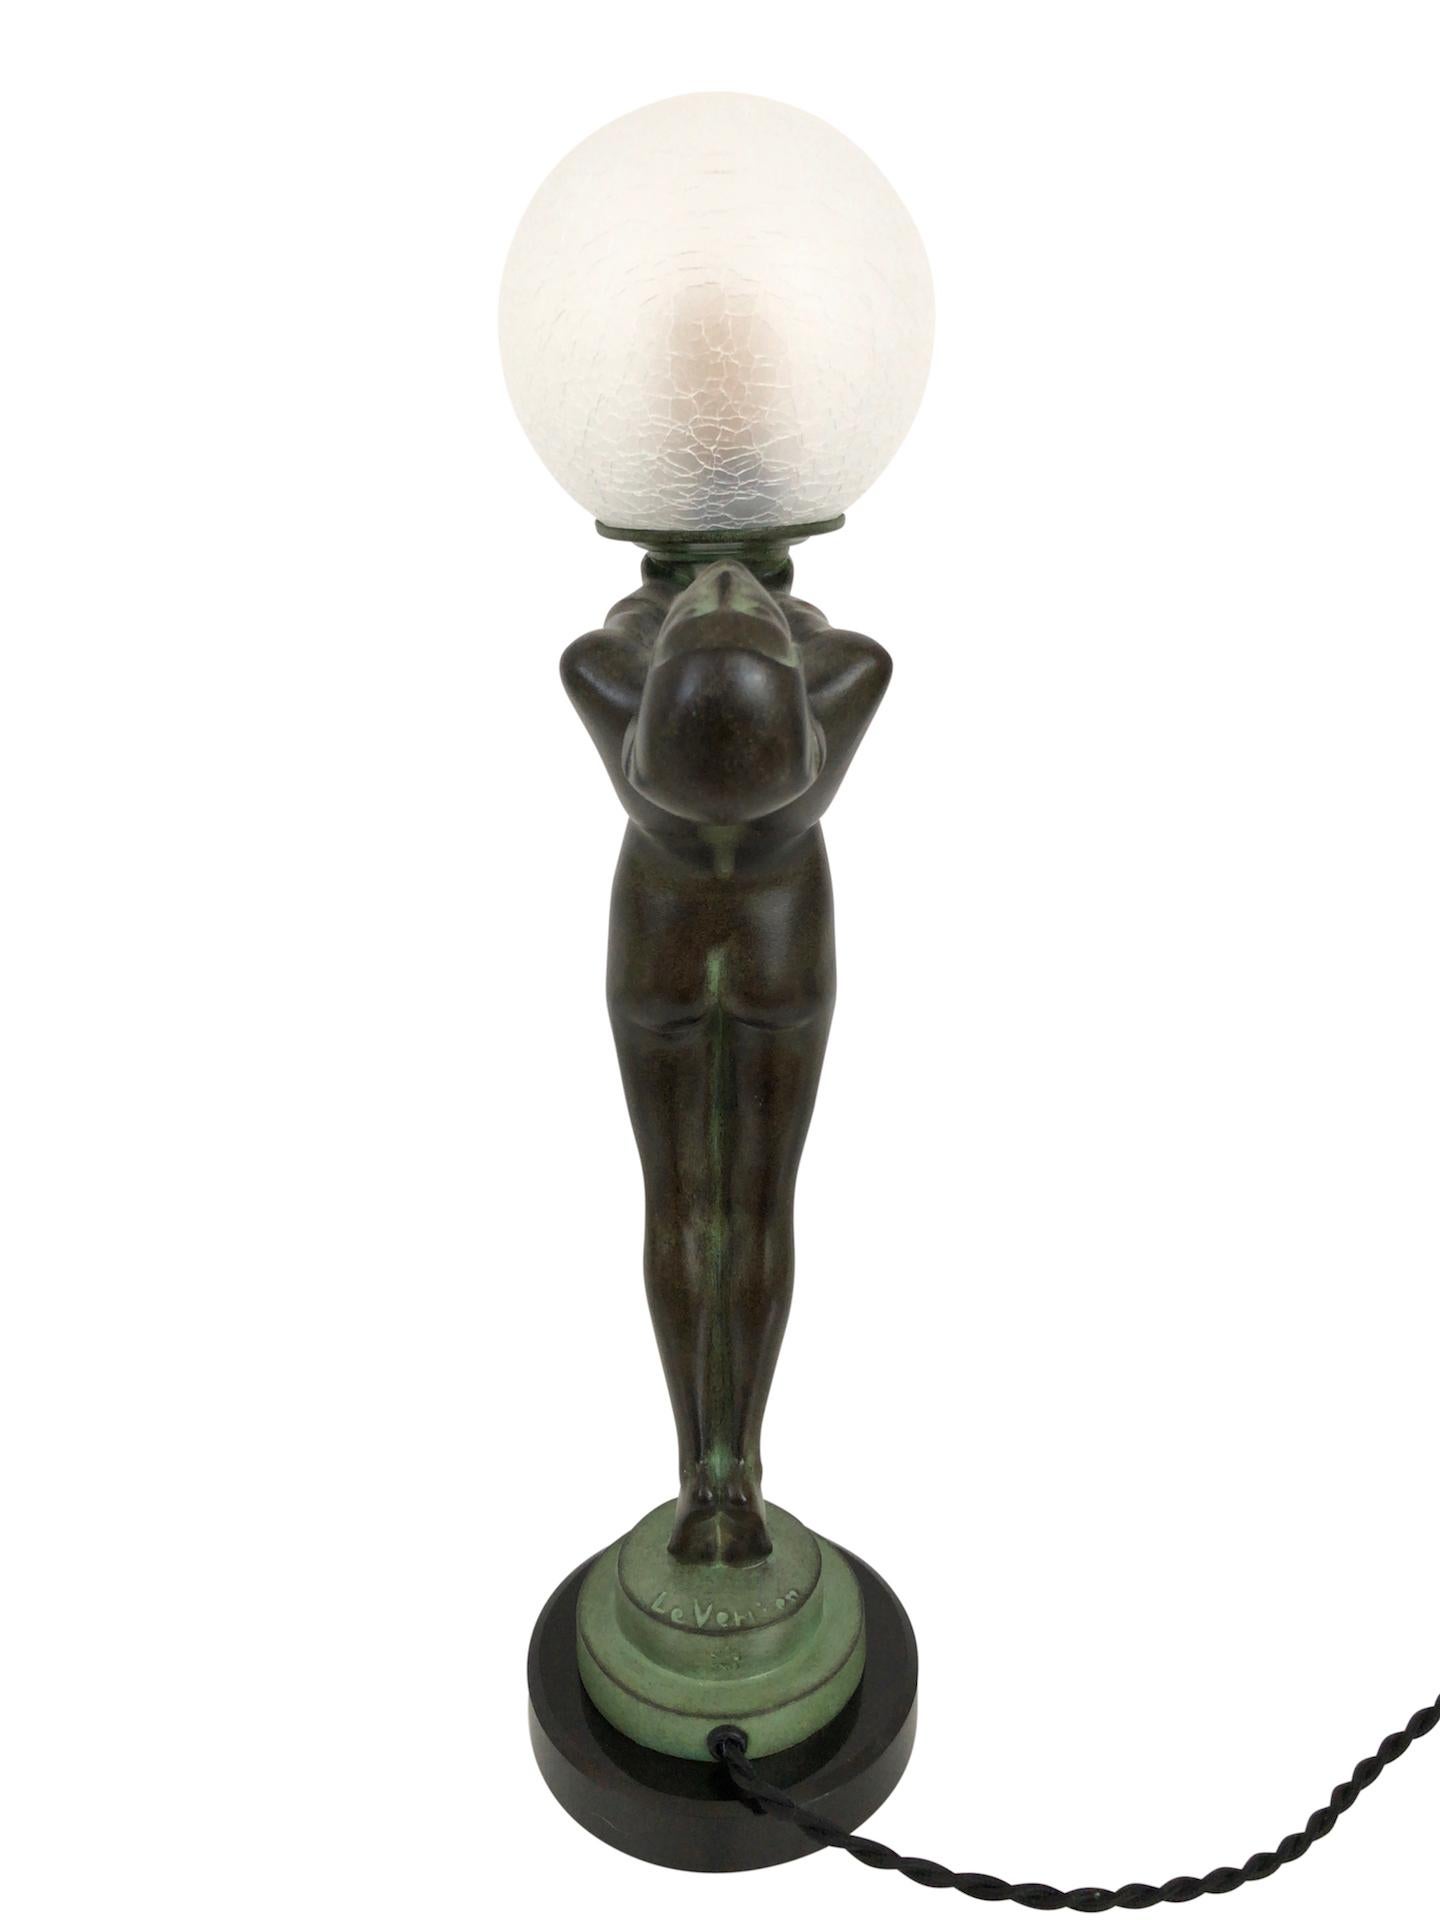 Patinated Clarté Sculpture Lueur Lamp from the Important Art Deco Artist Max Le Verrier